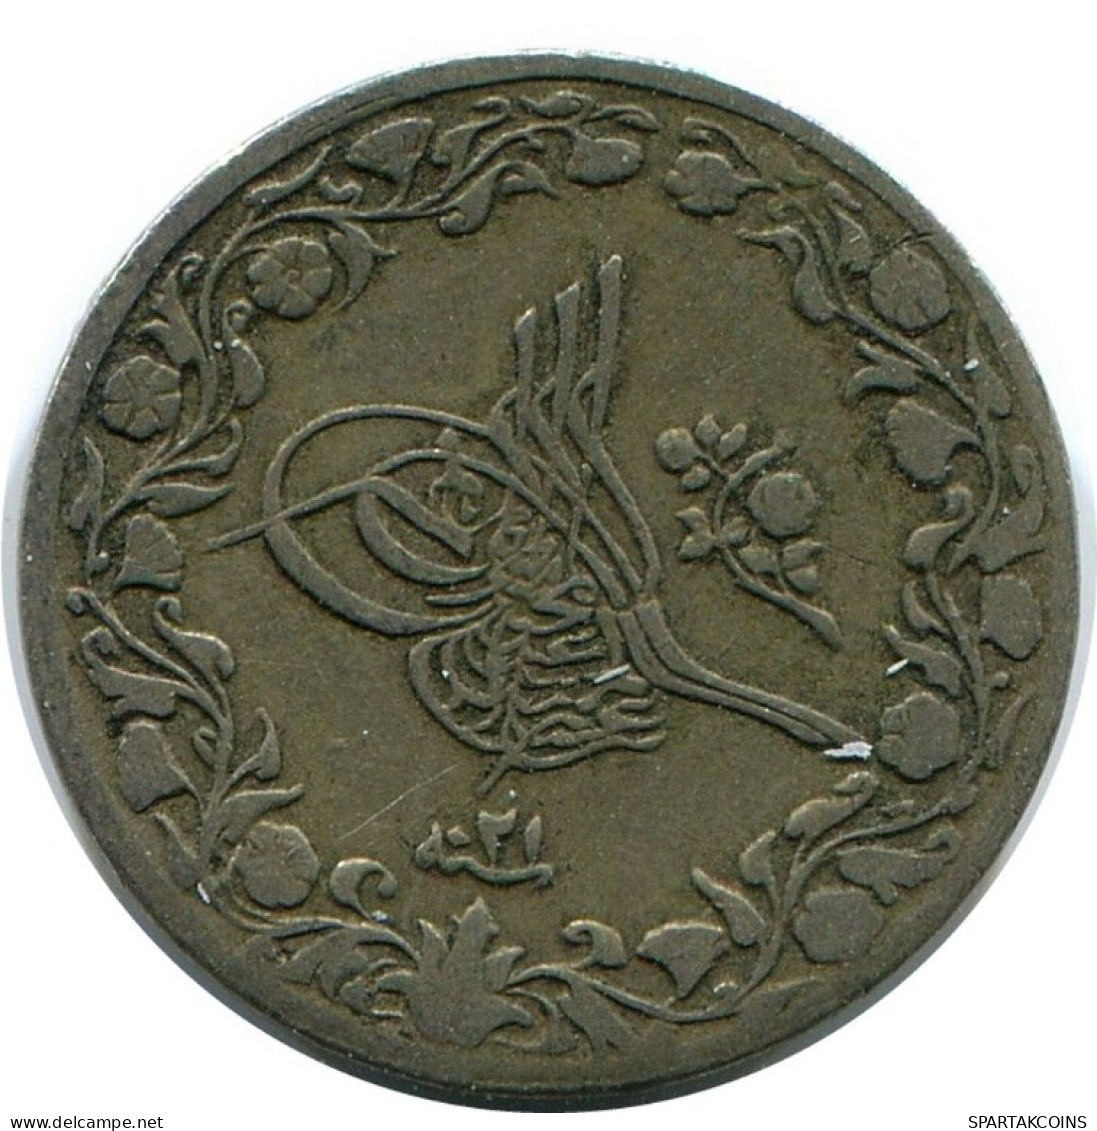 1/10 QIRSH 1895 EGYPT Islamic Coin #AK347.U.A - Egypt